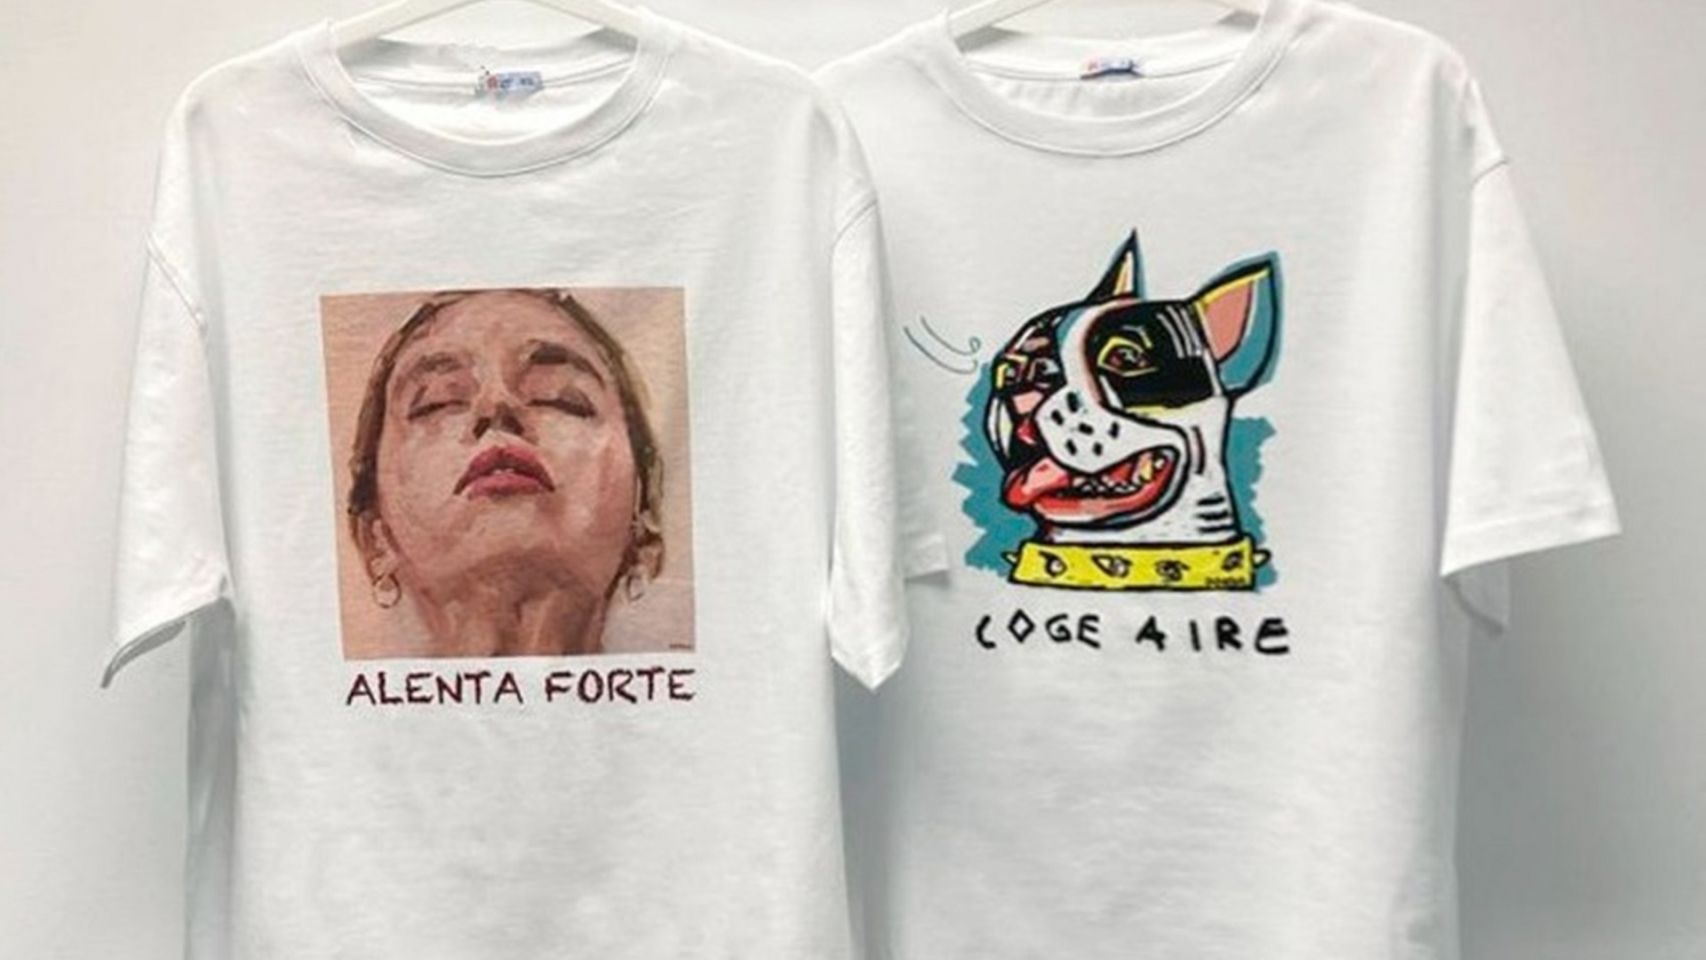 Las dos camisetas del proyecto solidario Coge aire.